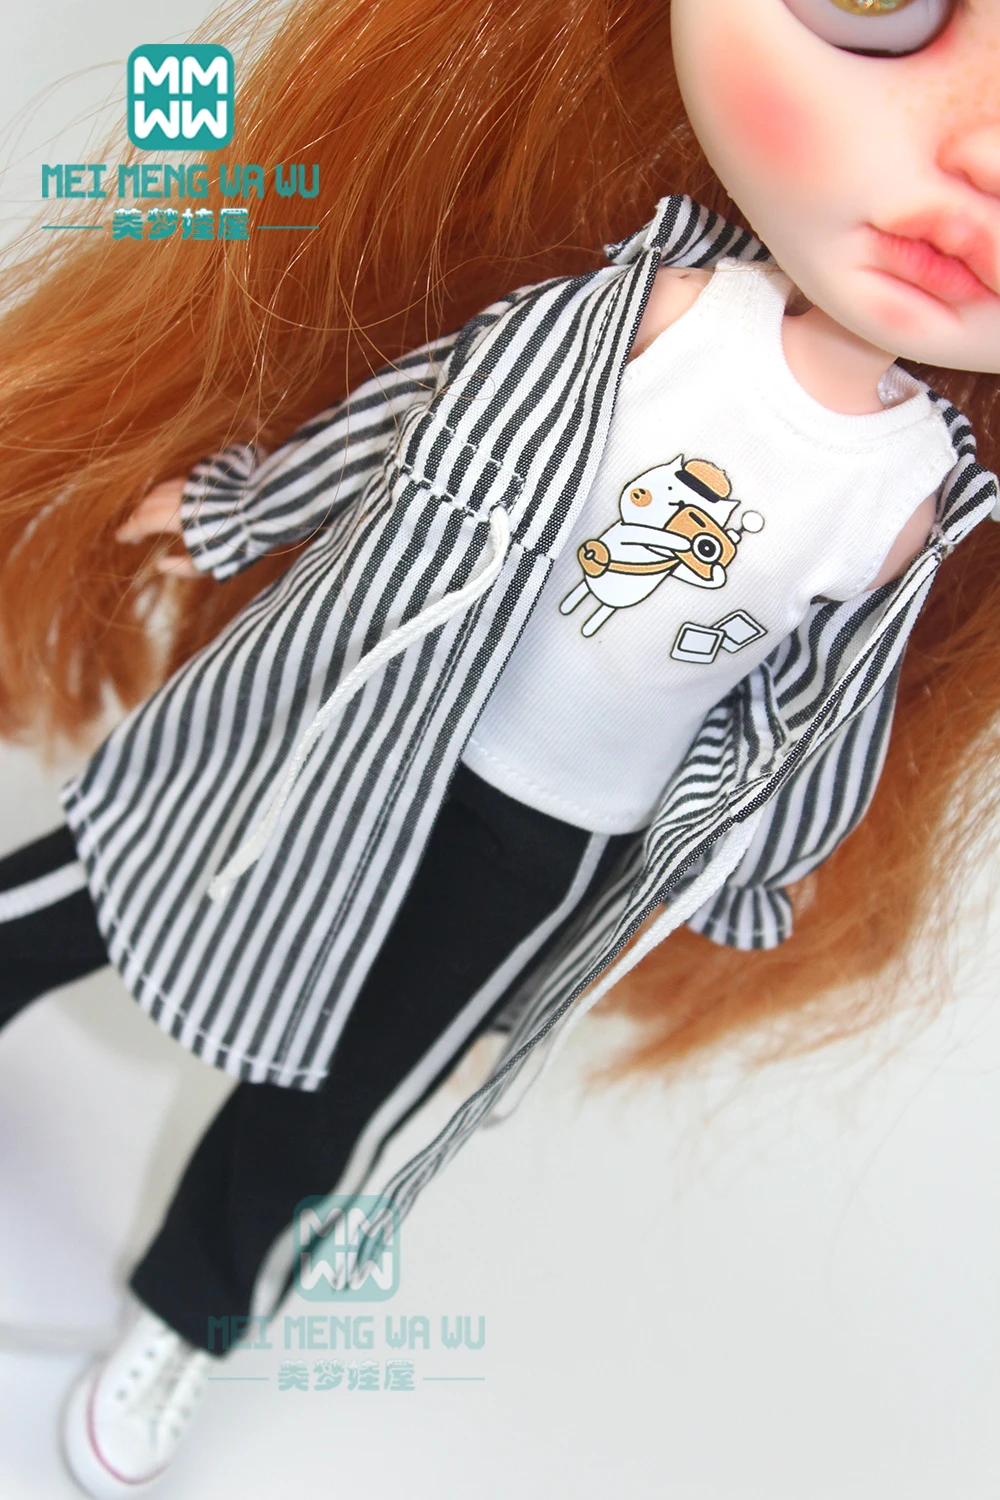 1 шт. одежда Blyth Doll полосатая рубашка, жилет, спортивные штаны для Blyth Azone OB24 OB23 кукла 1/6 аксессуары